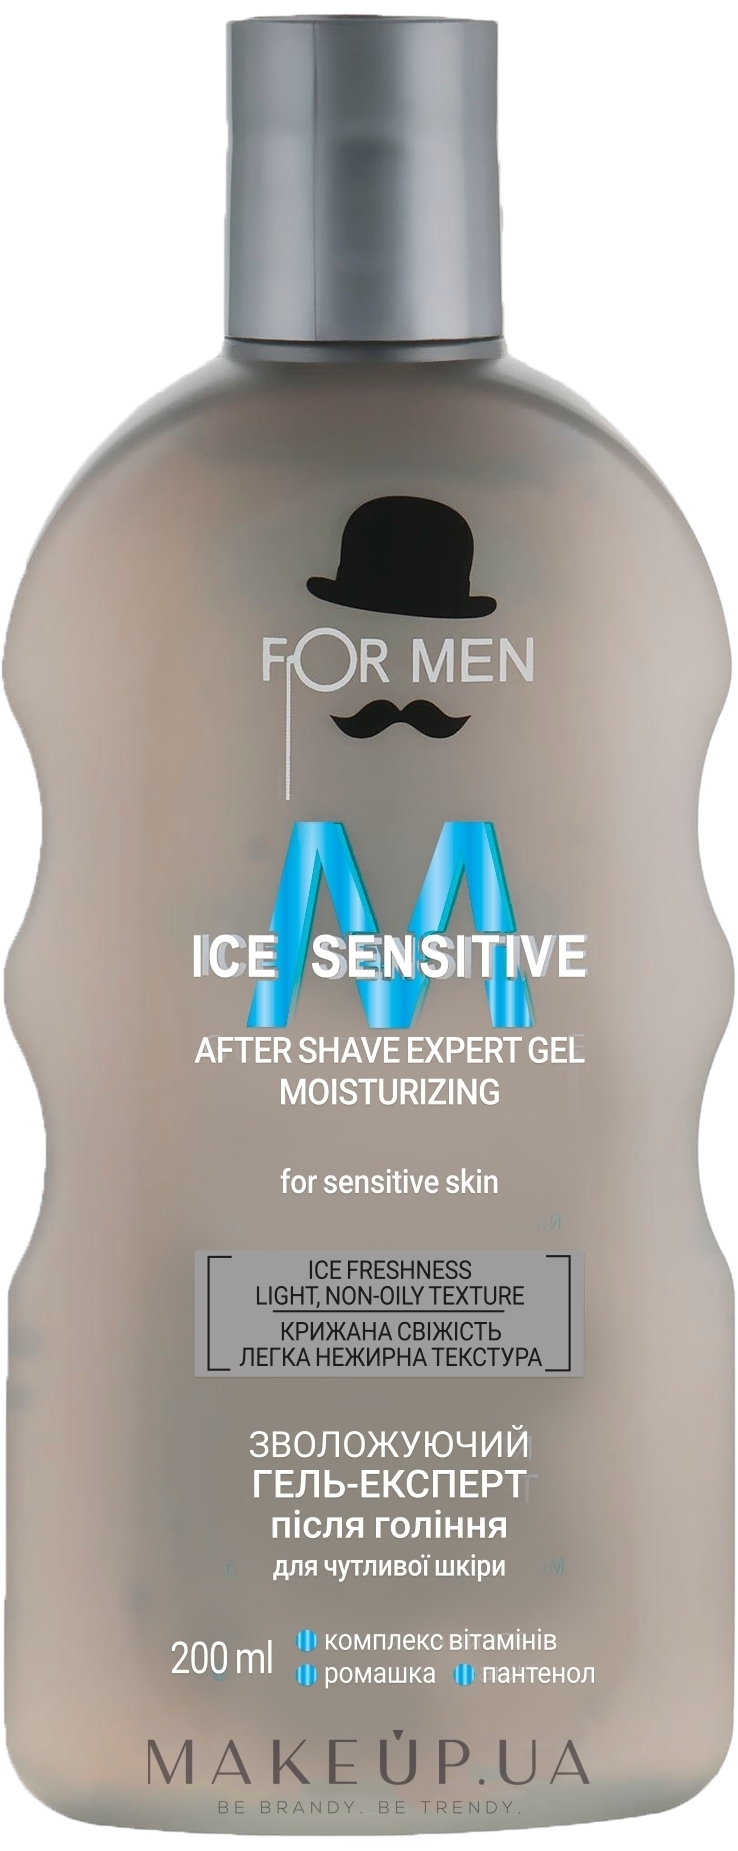 Увлажняющий гель-эксперт после бритья - For Men Ice Sensitive — фото 200ml